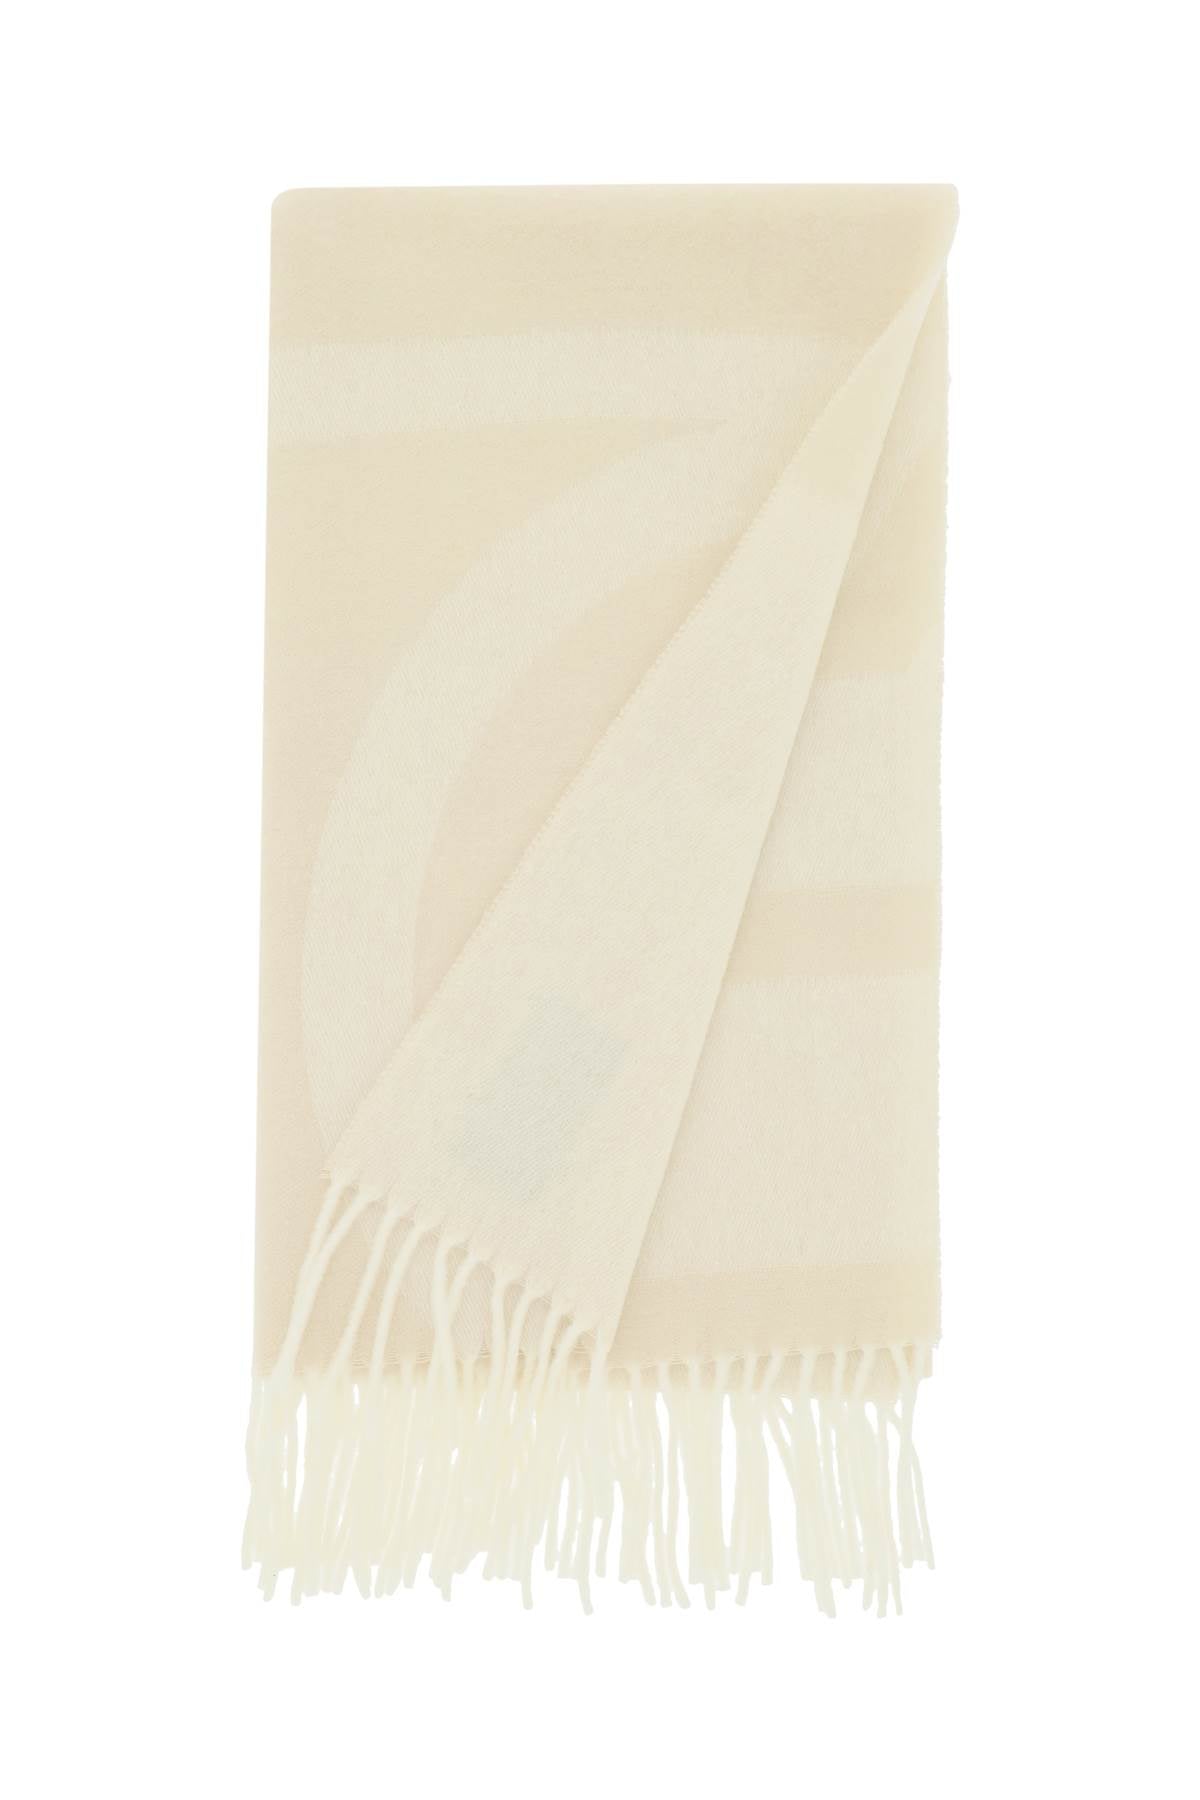 Toteme Toteme monogram jacquard wool scarf